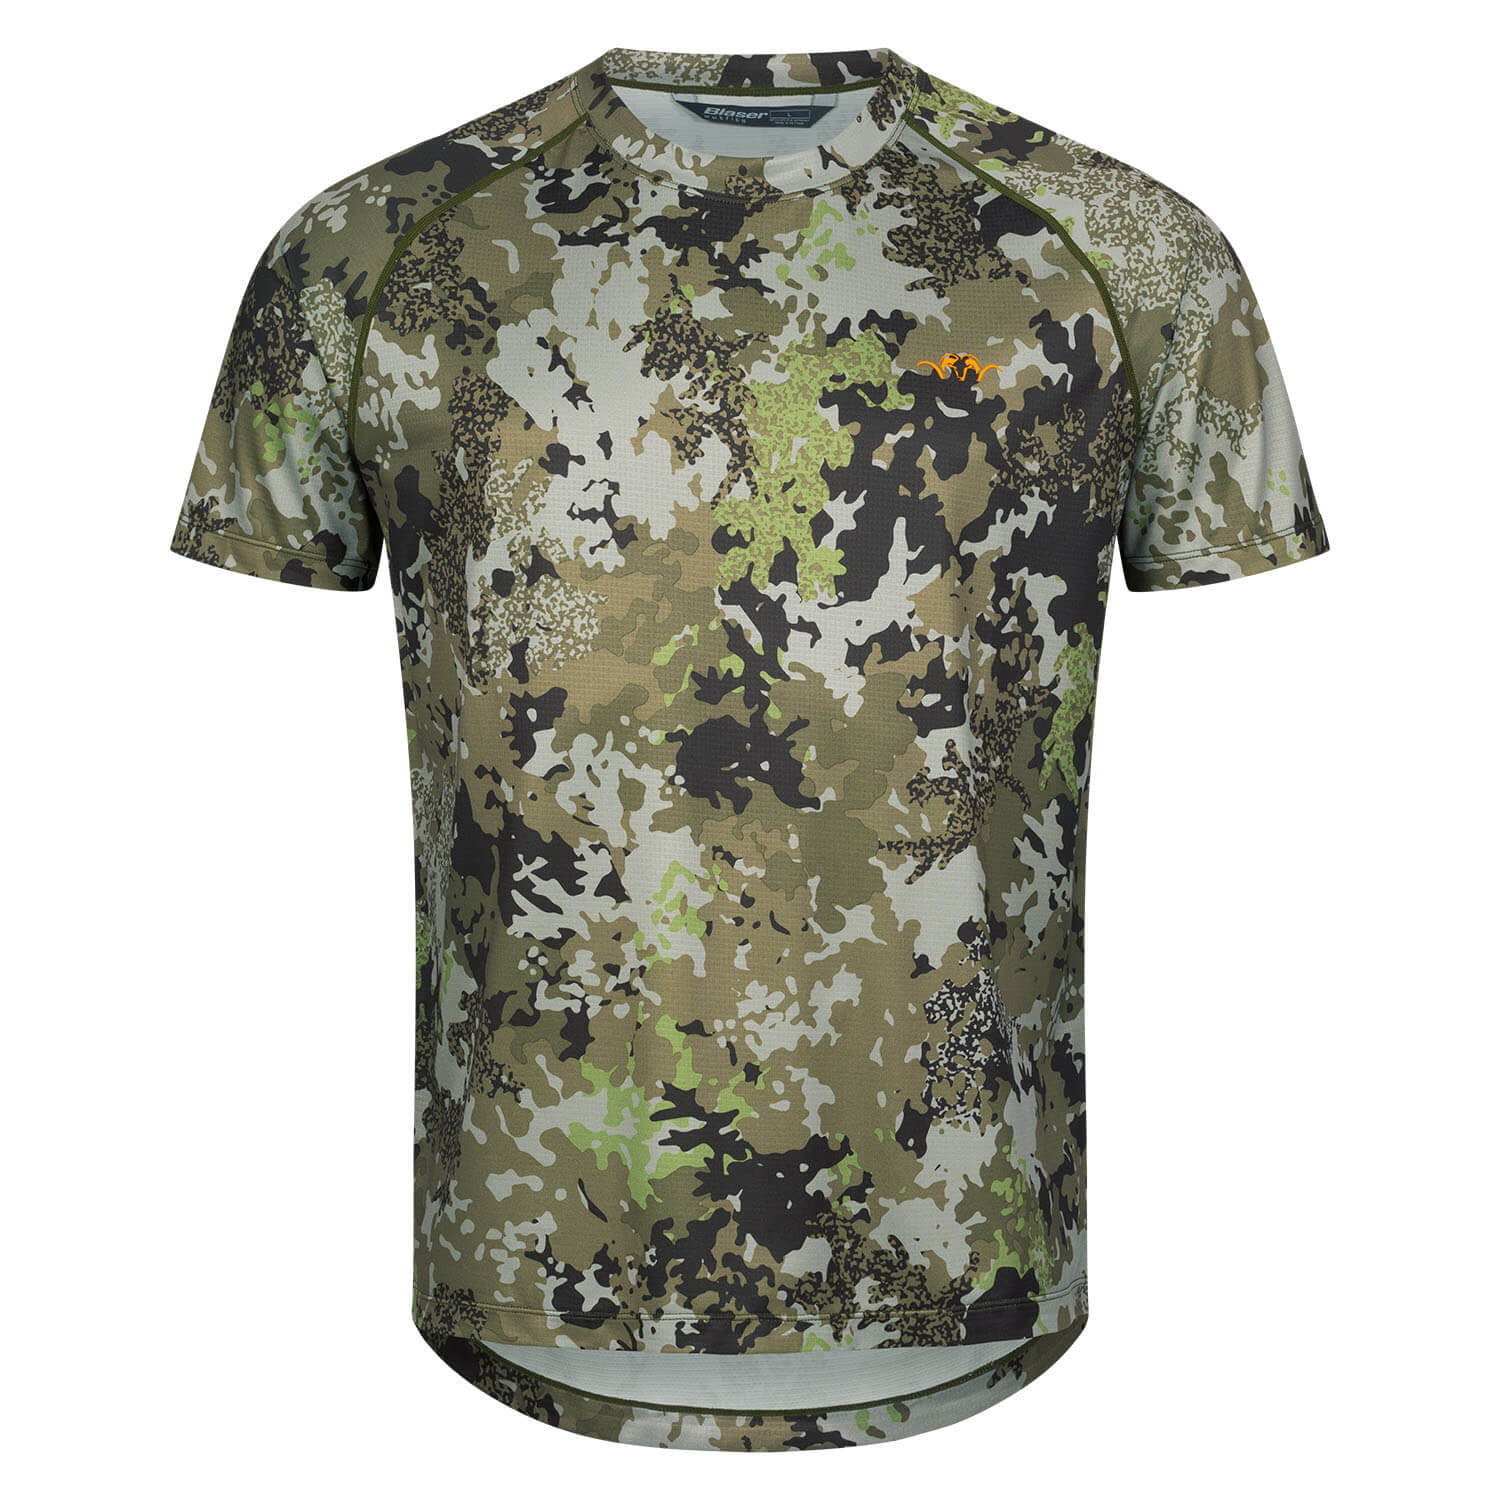 Blaser HunTec t-shirt tech 23 (camo) - Camouflage Shirts